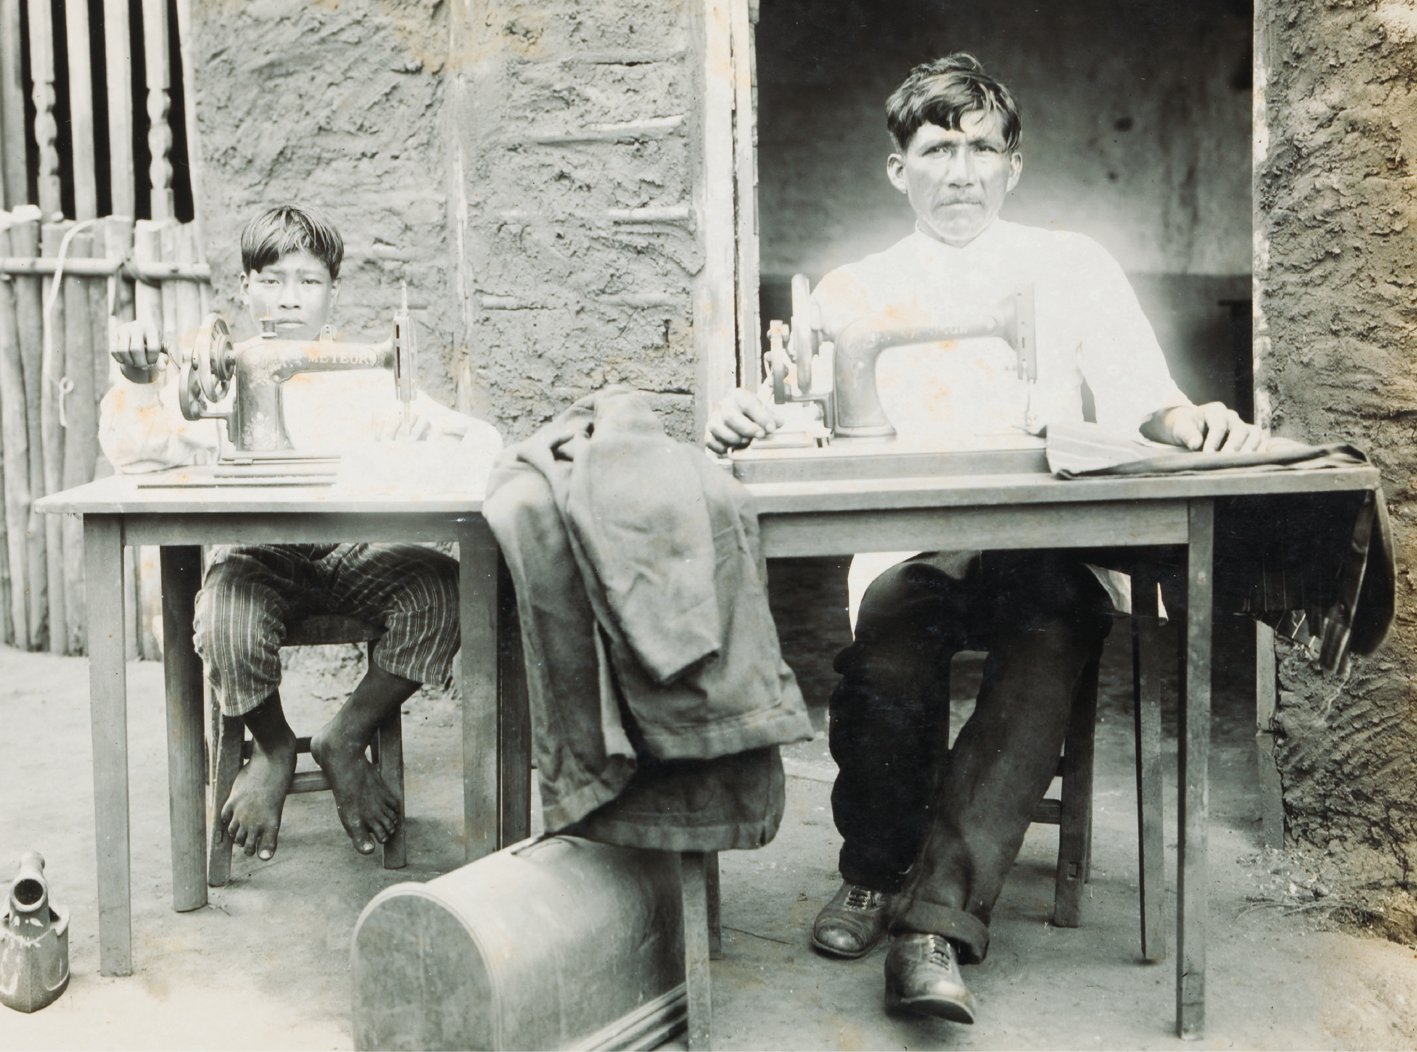 Fotografia em preto e branco. Dois indígenas, um homem e um menino, sentados trabalhando, cada um em uma máquina de costura. O menino usa camisa clara e calça listrada, e está descalço. O homem usa camisa clara, calça social escura e sapato preto.